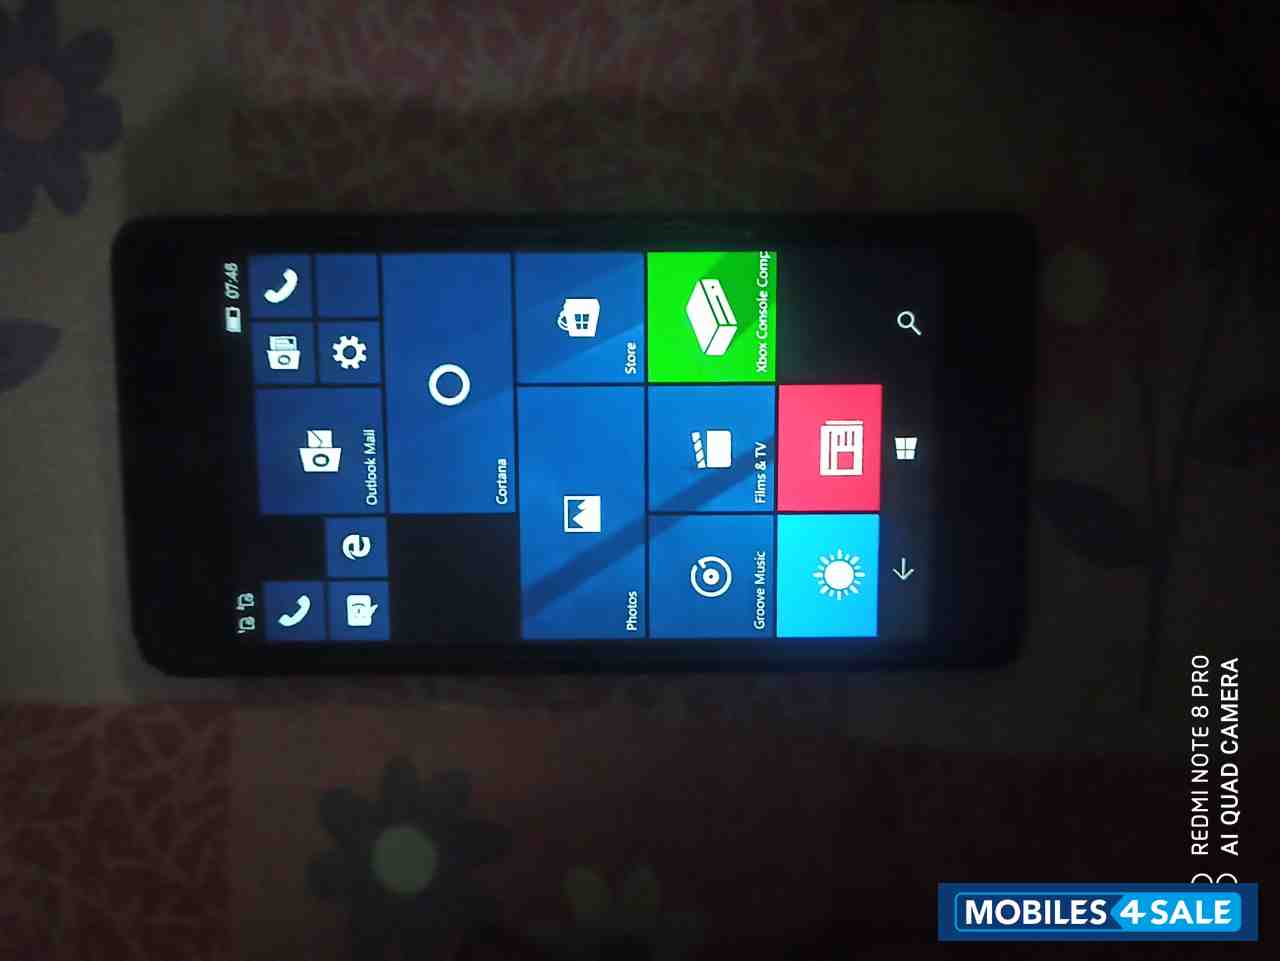 Microsoft  Lumia 540 dual